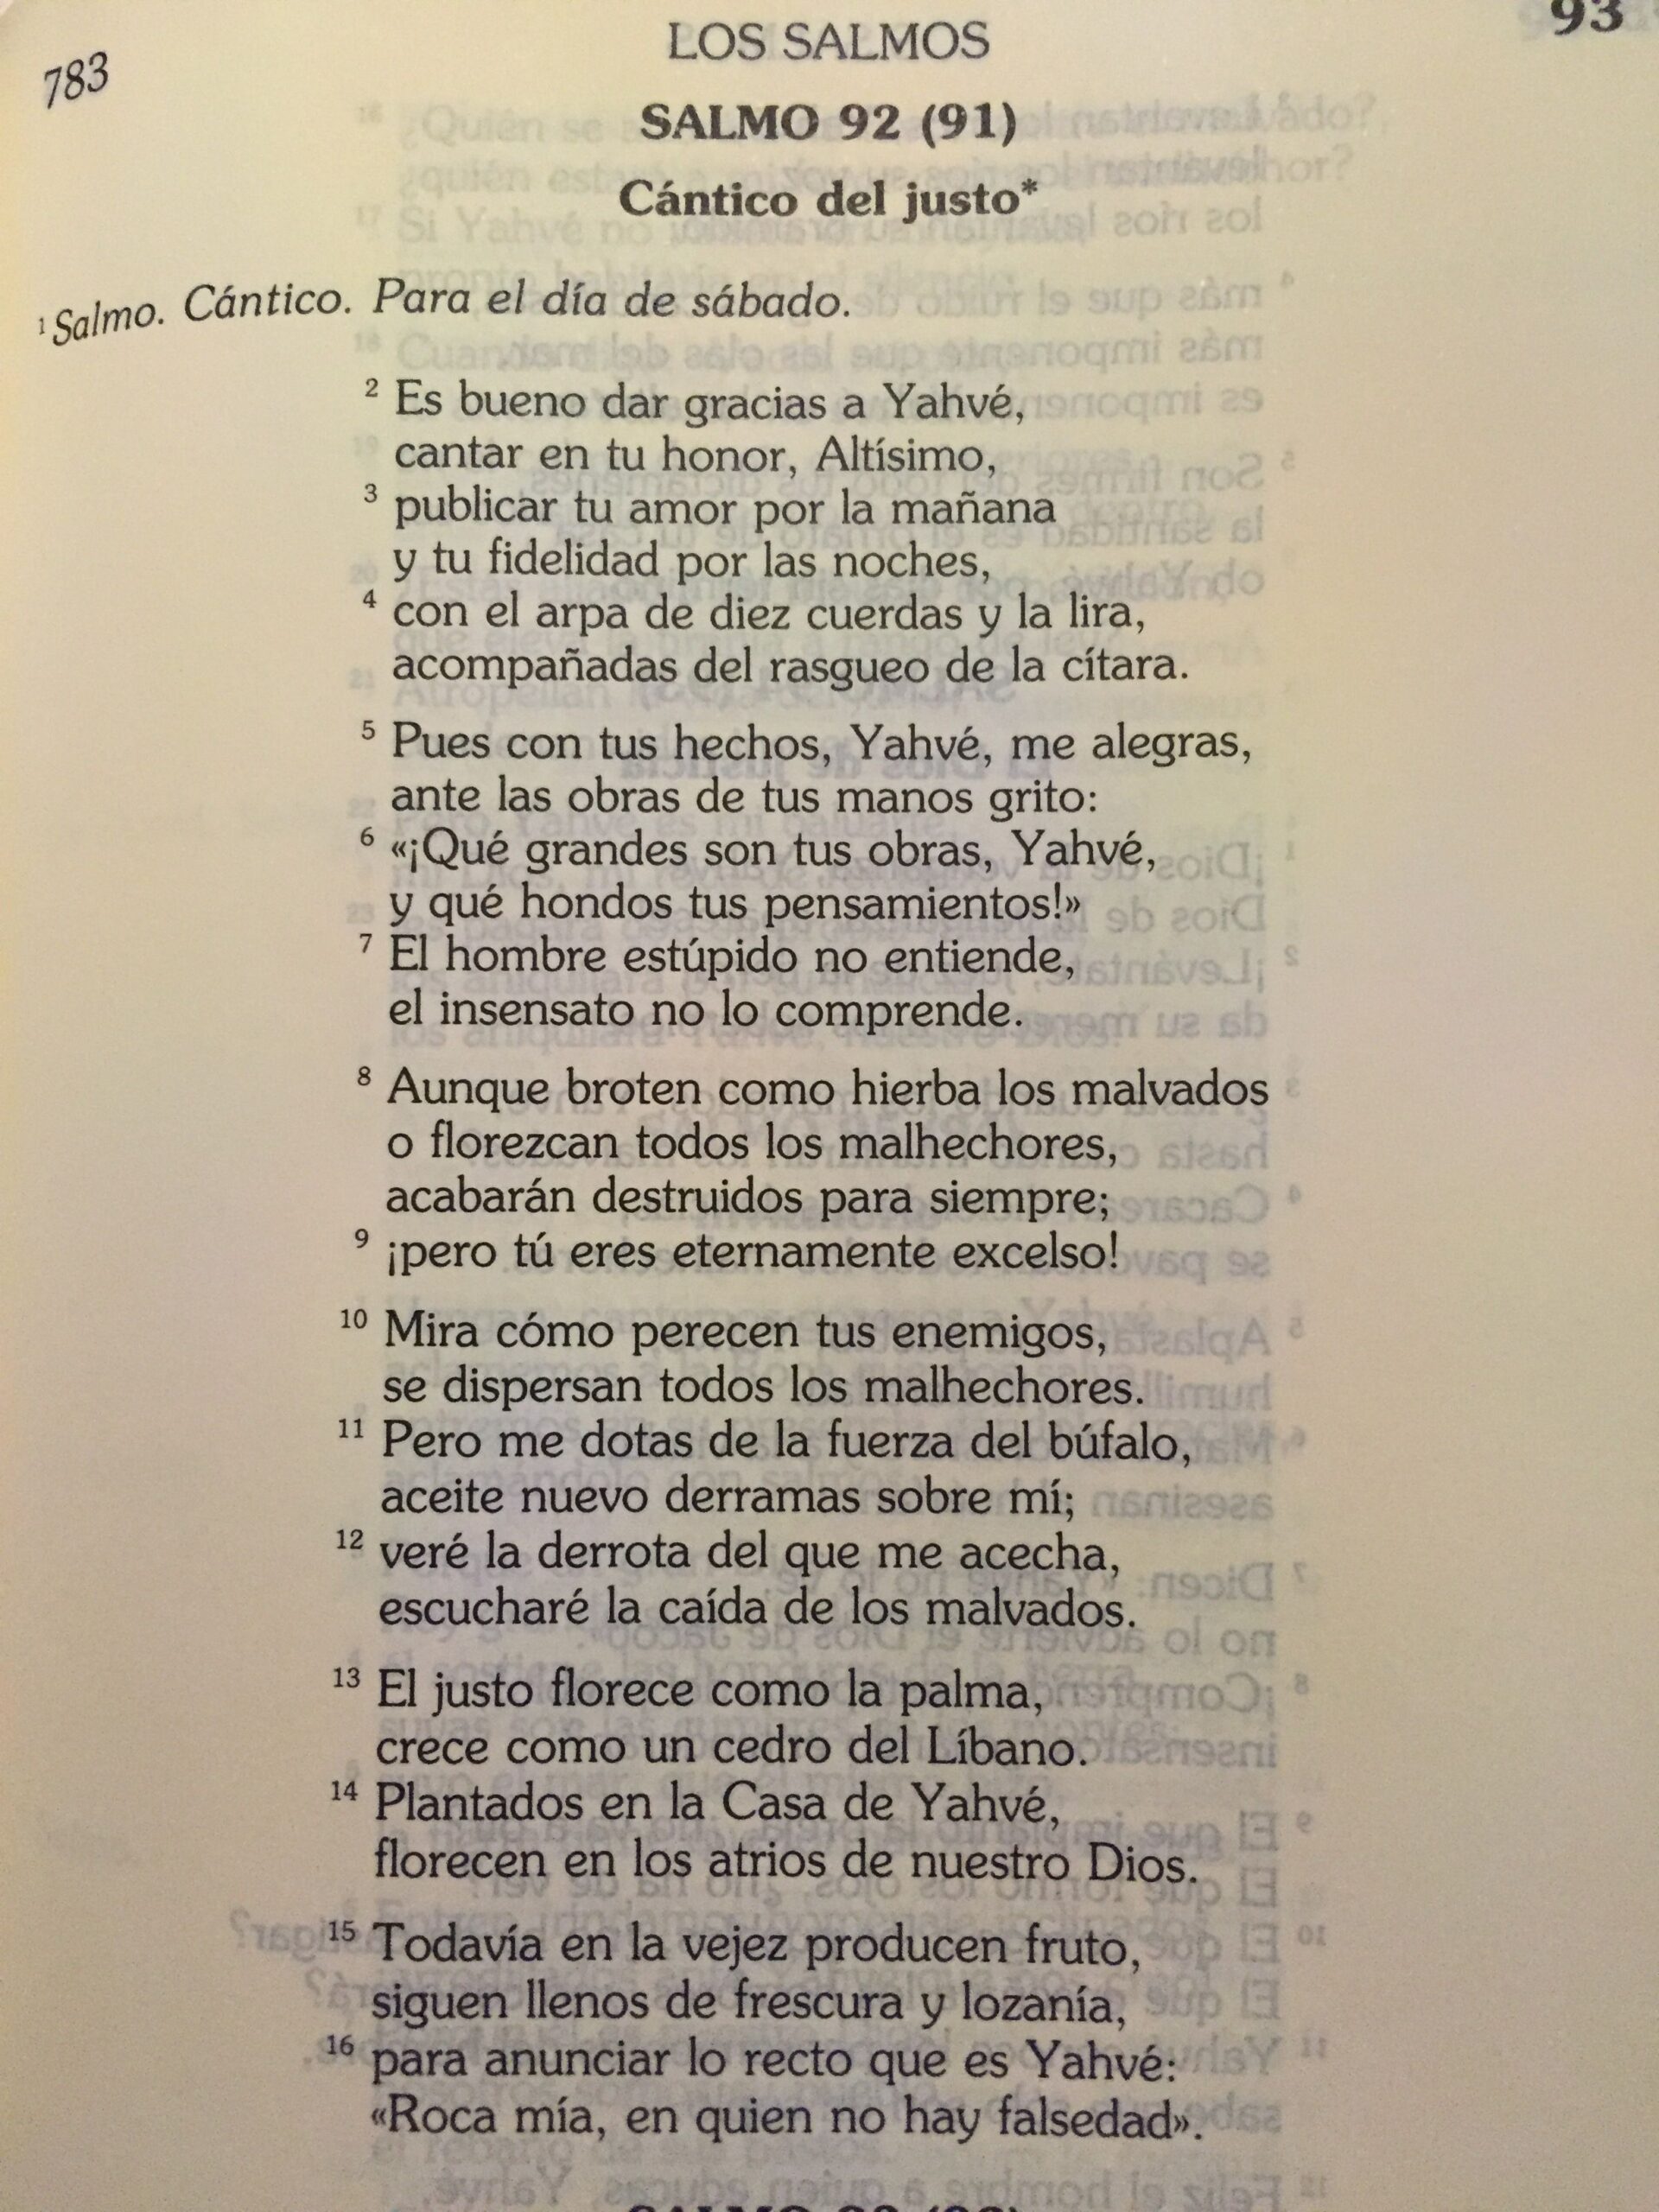 Salmo 92 de la Biblia Catolica